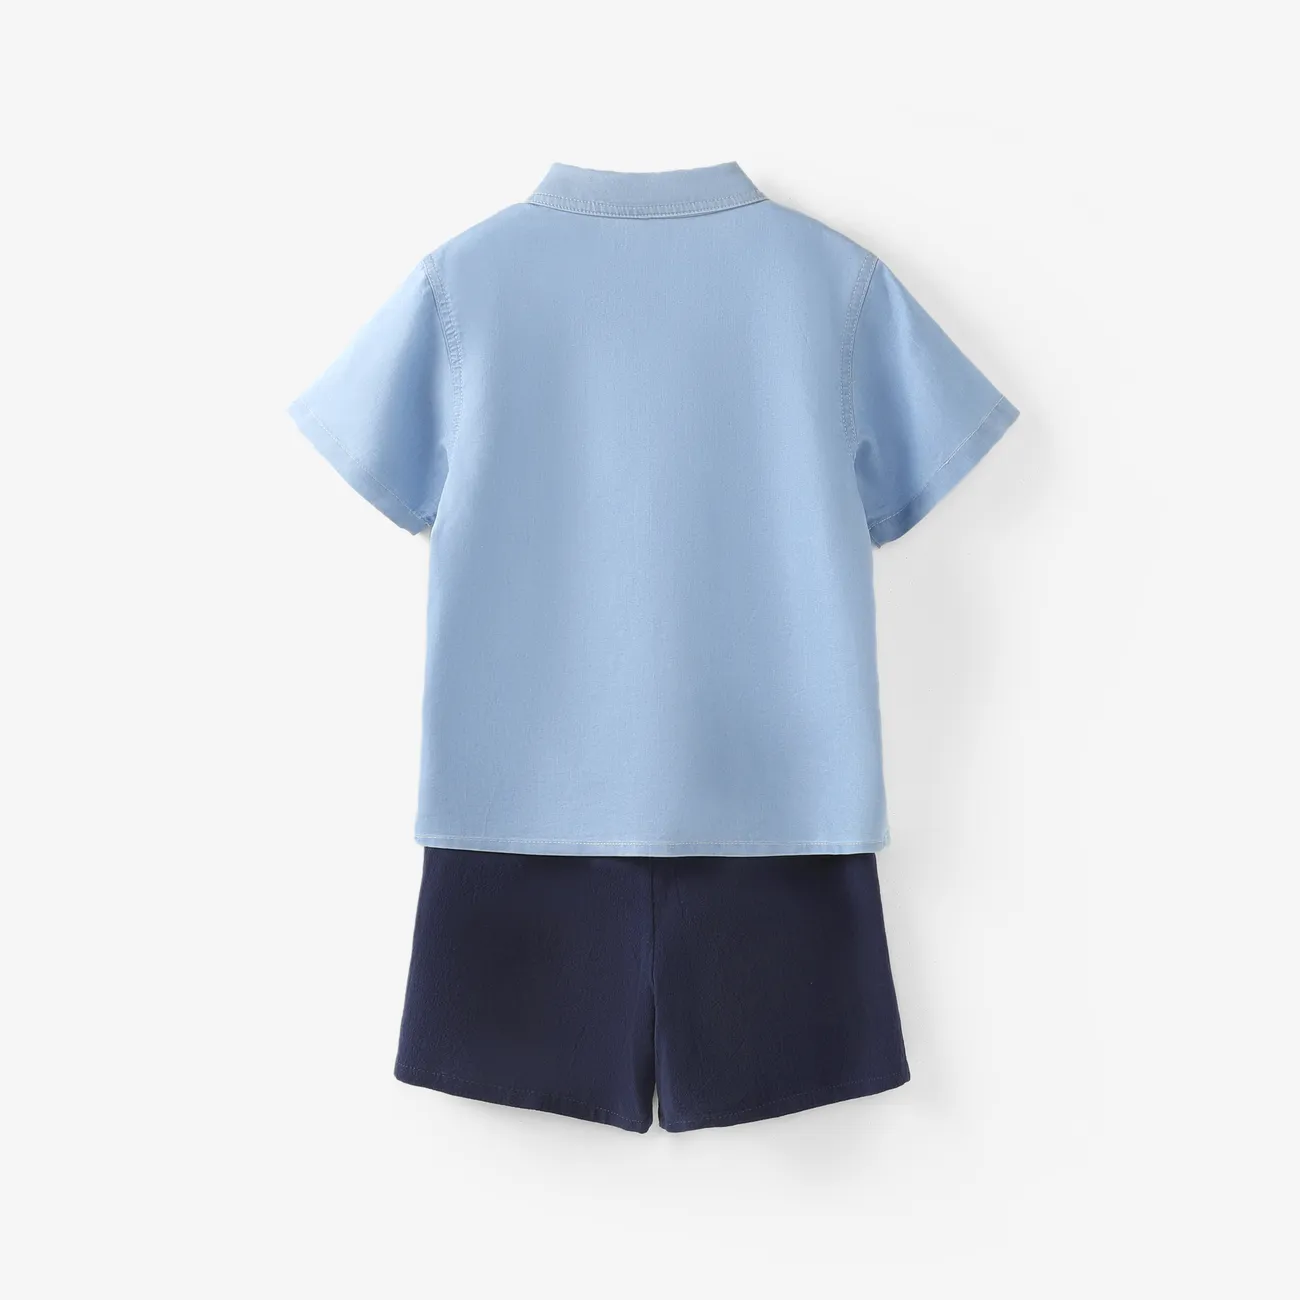 طفل صغير / طفل صبي 2 قطع تبريد الدنيم رسالة طباعة قميص والسراويل الضوء الأزرق big image 1